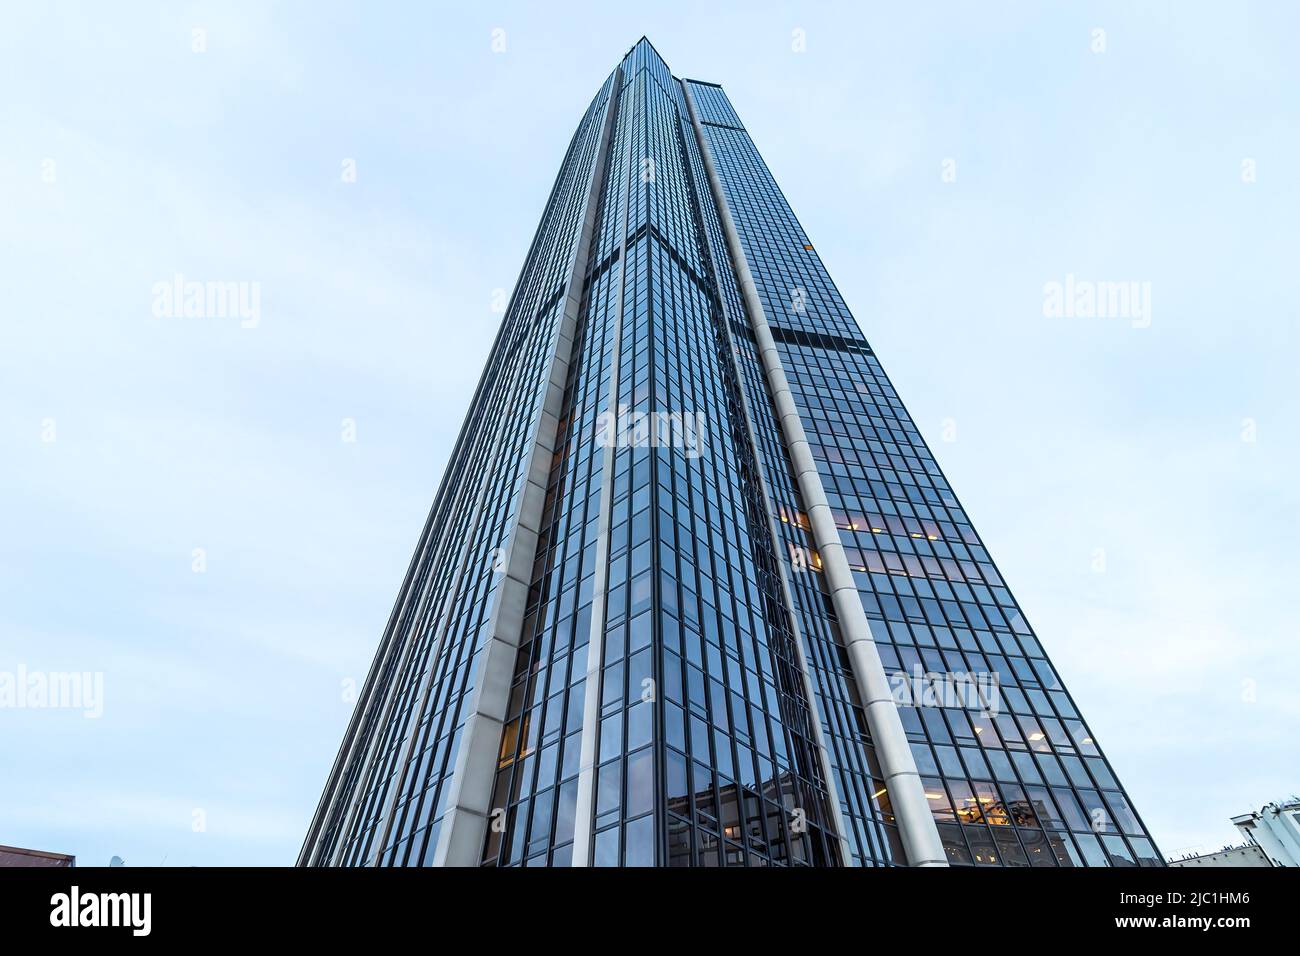 Parigi, Francia - 18 marzo 2018: Tour Gan è un grattacielo per uffici situato a la Défense, l'alto quartiere degli affari situato a ovest di Parigi, Francia Foto Stock